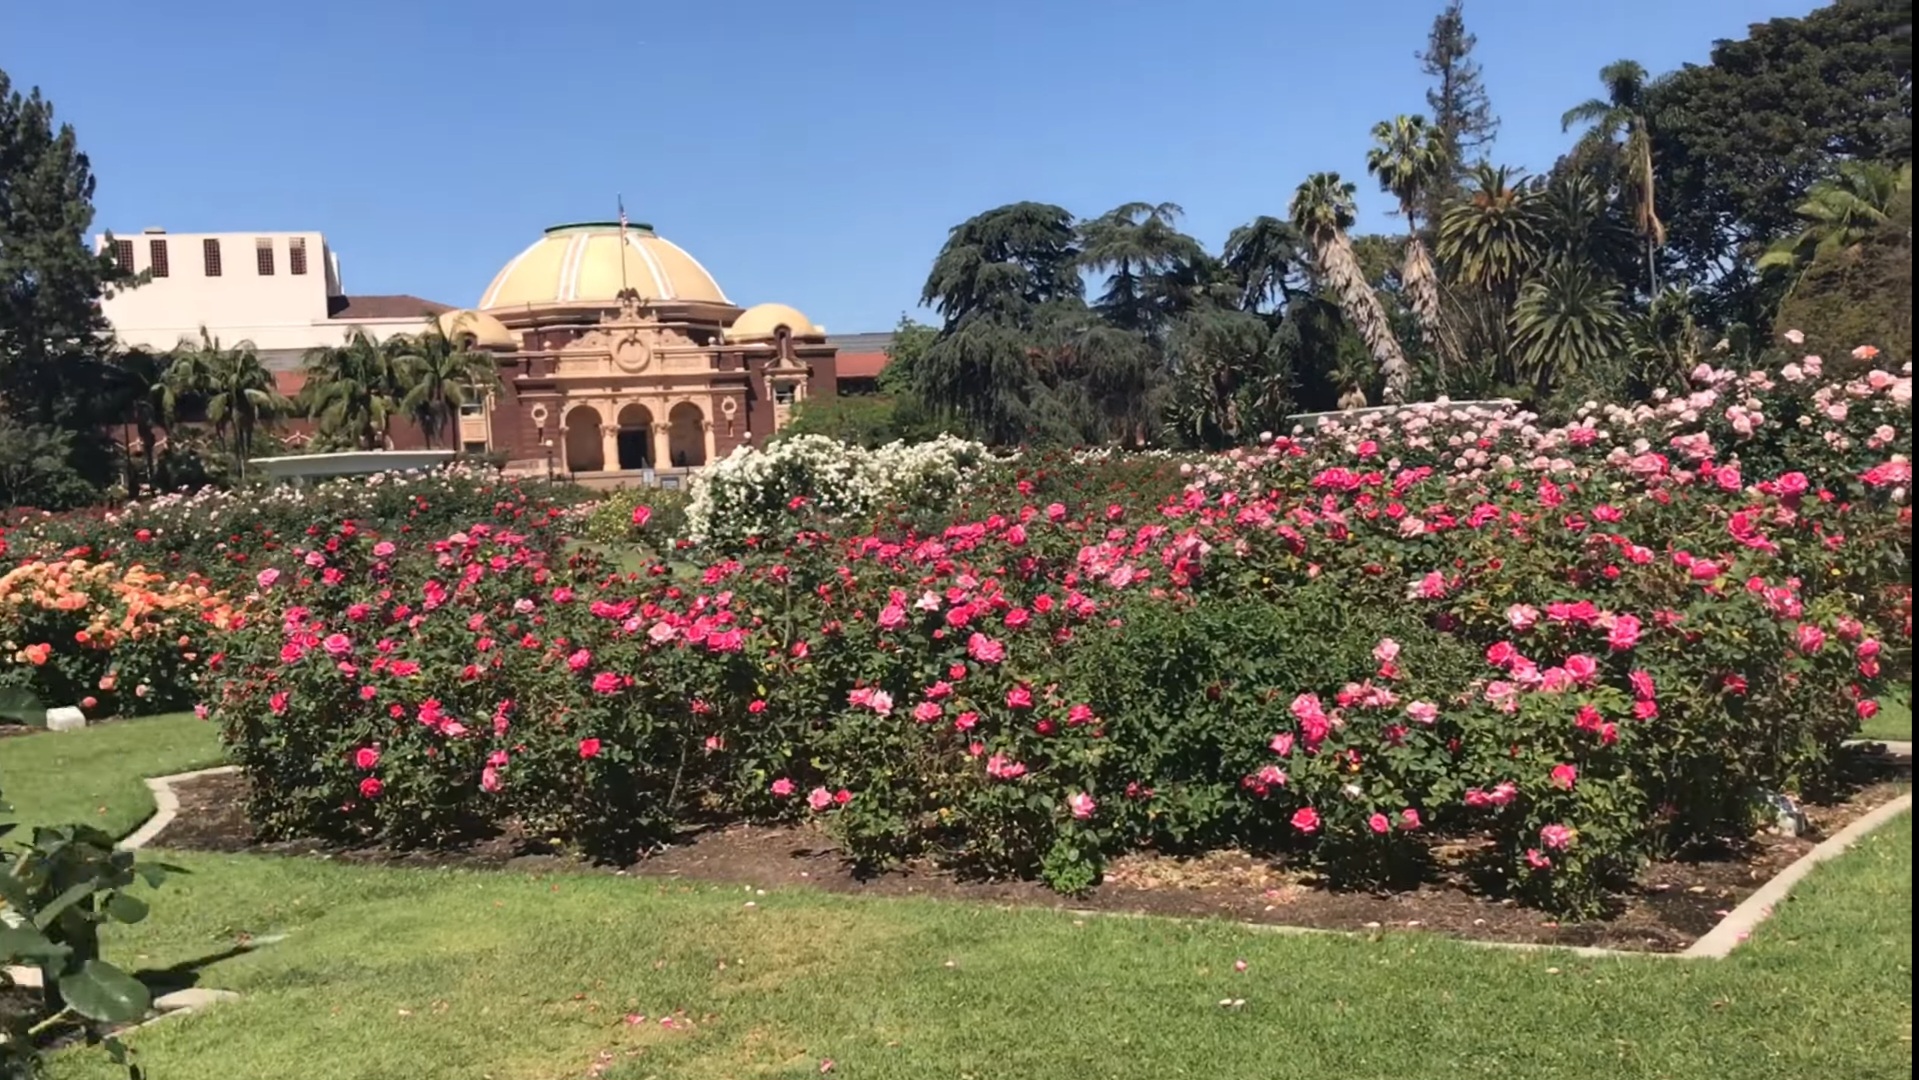 Rose Garden At Exposition Park In Los Angeles (LA)